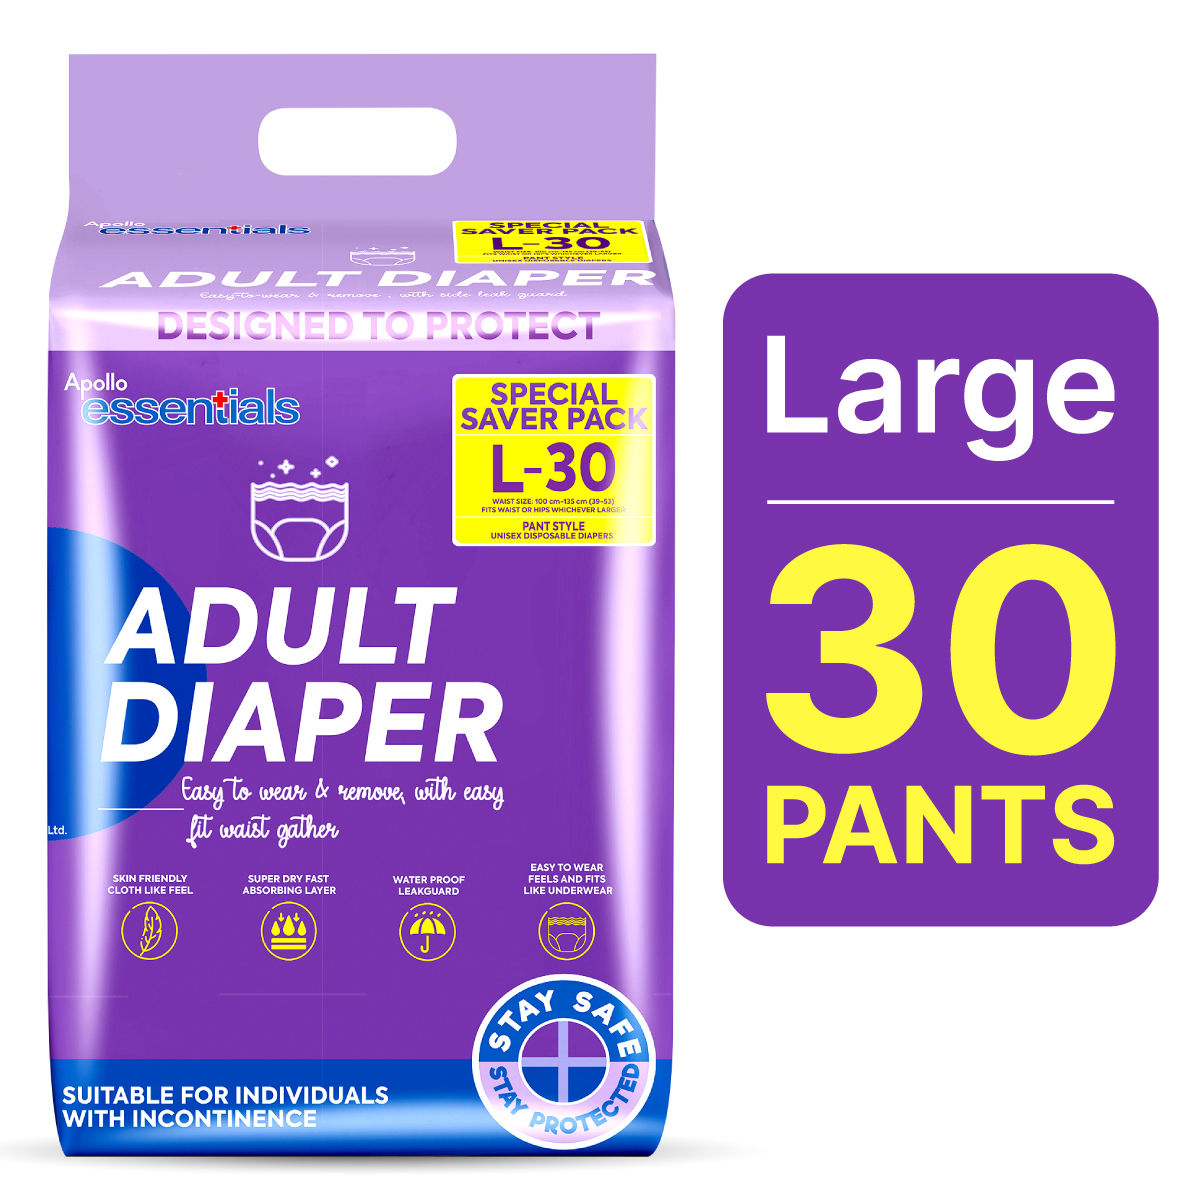 Buy Apollo Essentials Adult Diaper Pant Unisex Large, 30 Count Online